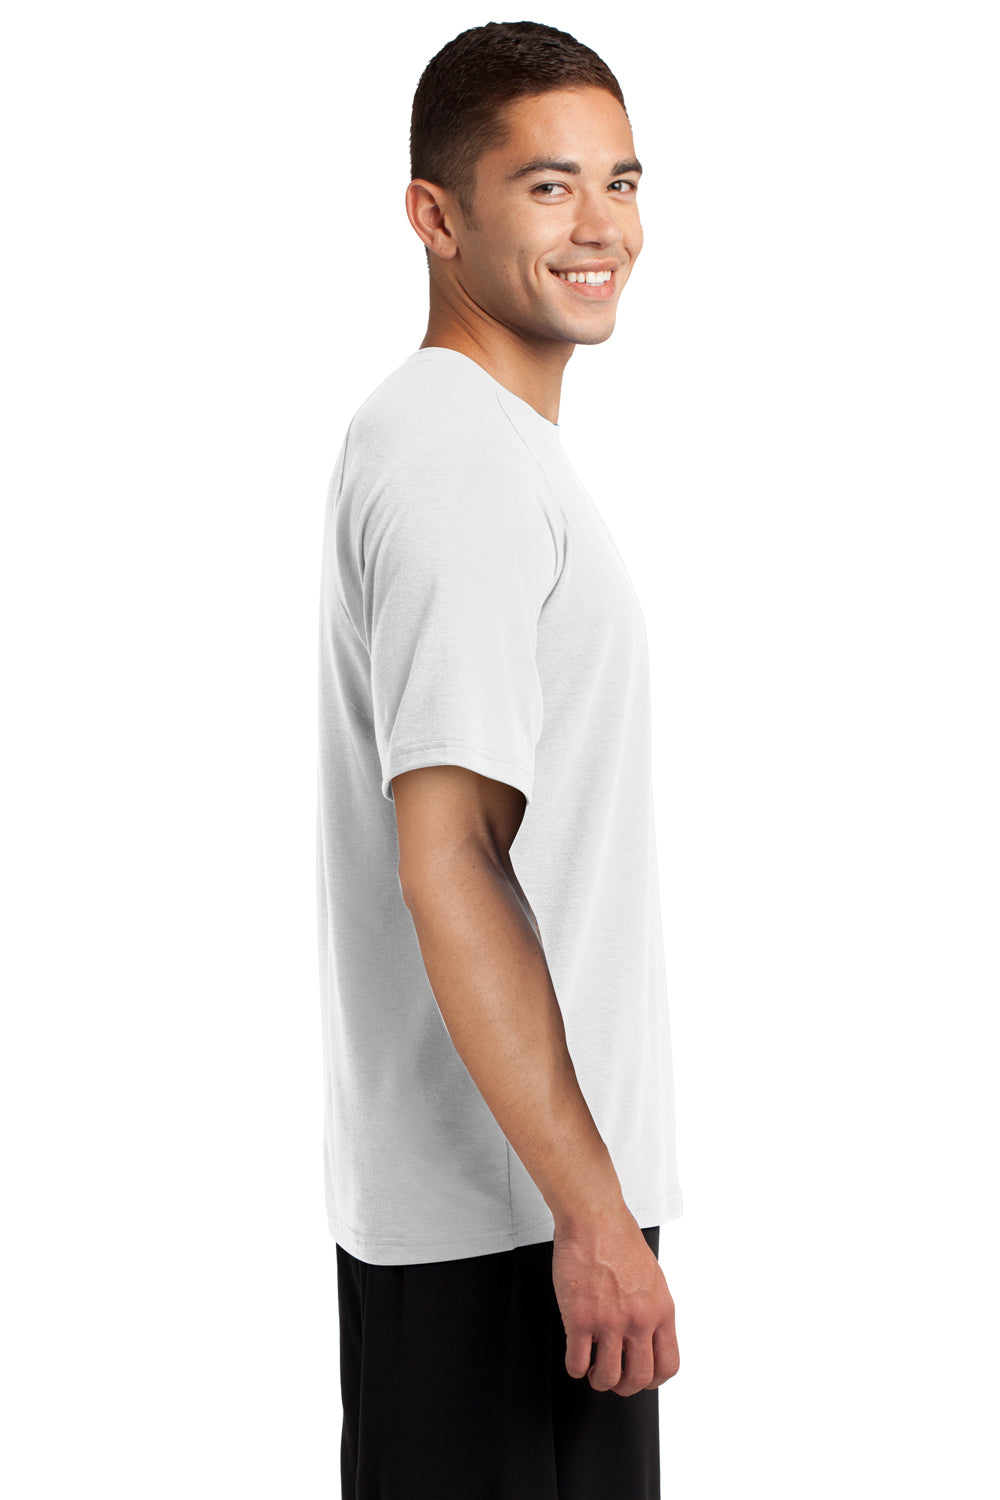 Sport-Tek ST700 Mens Ultimate Performance Moisture Wicking Short Sleeve Crewneck T-Shirt White Side